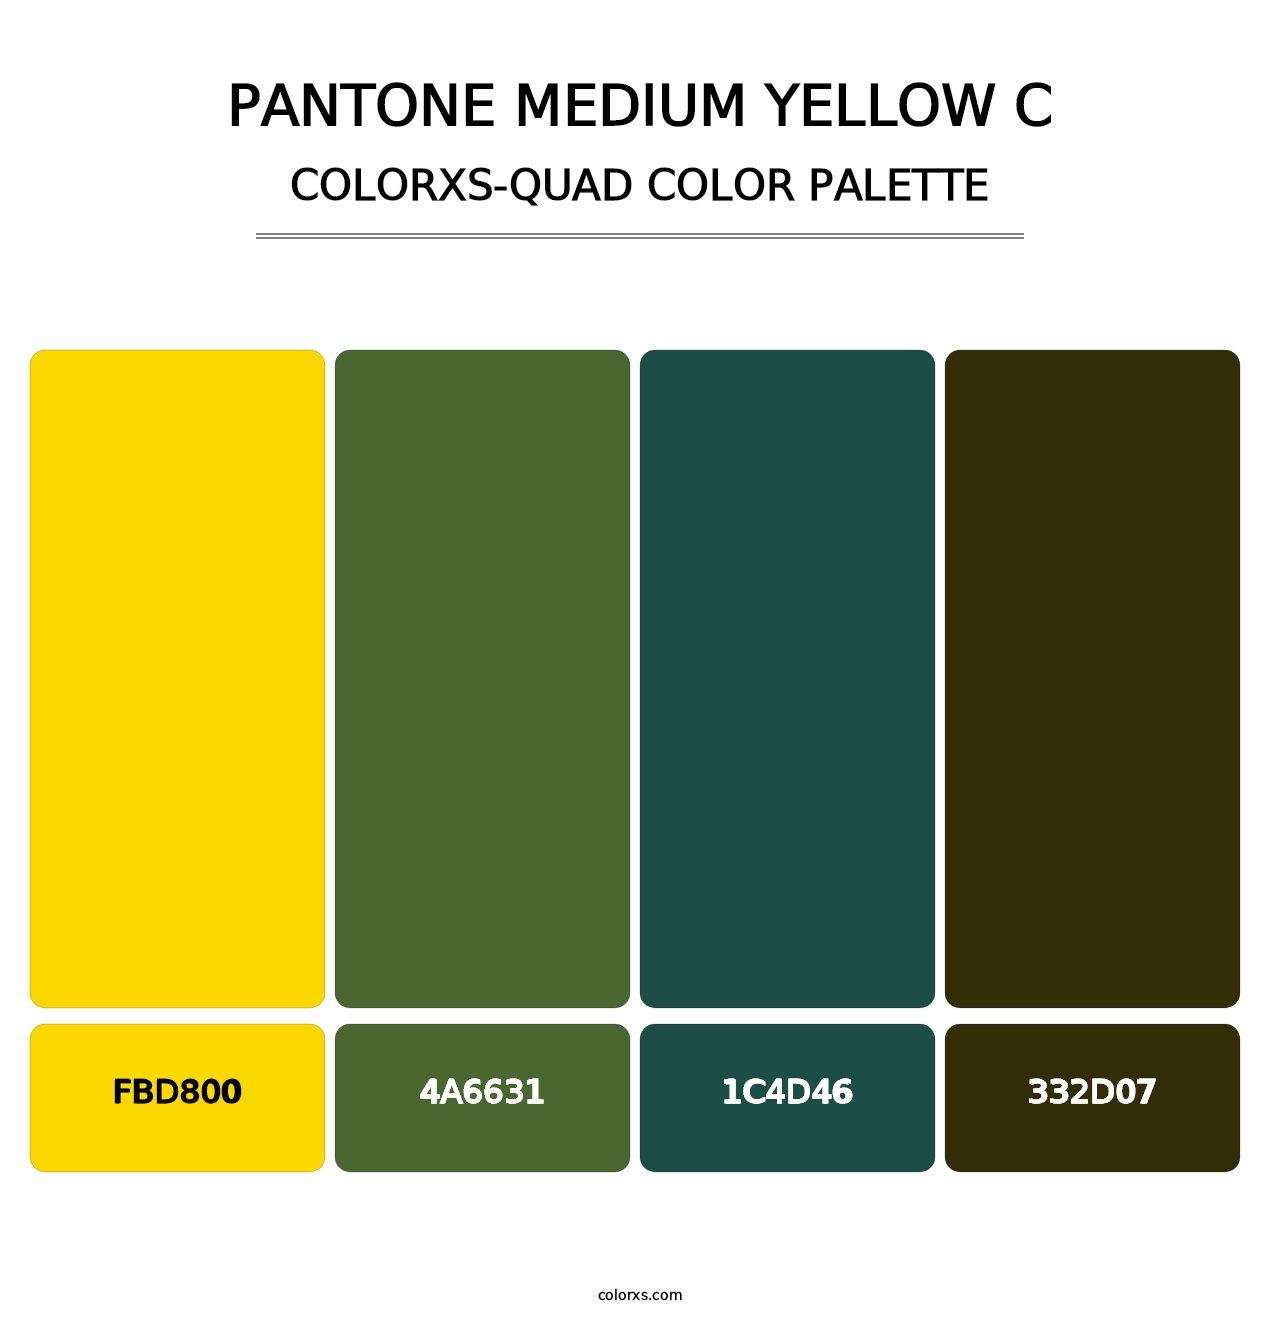 PANTONE Medium Yellow C - Colorxs Quad Palette